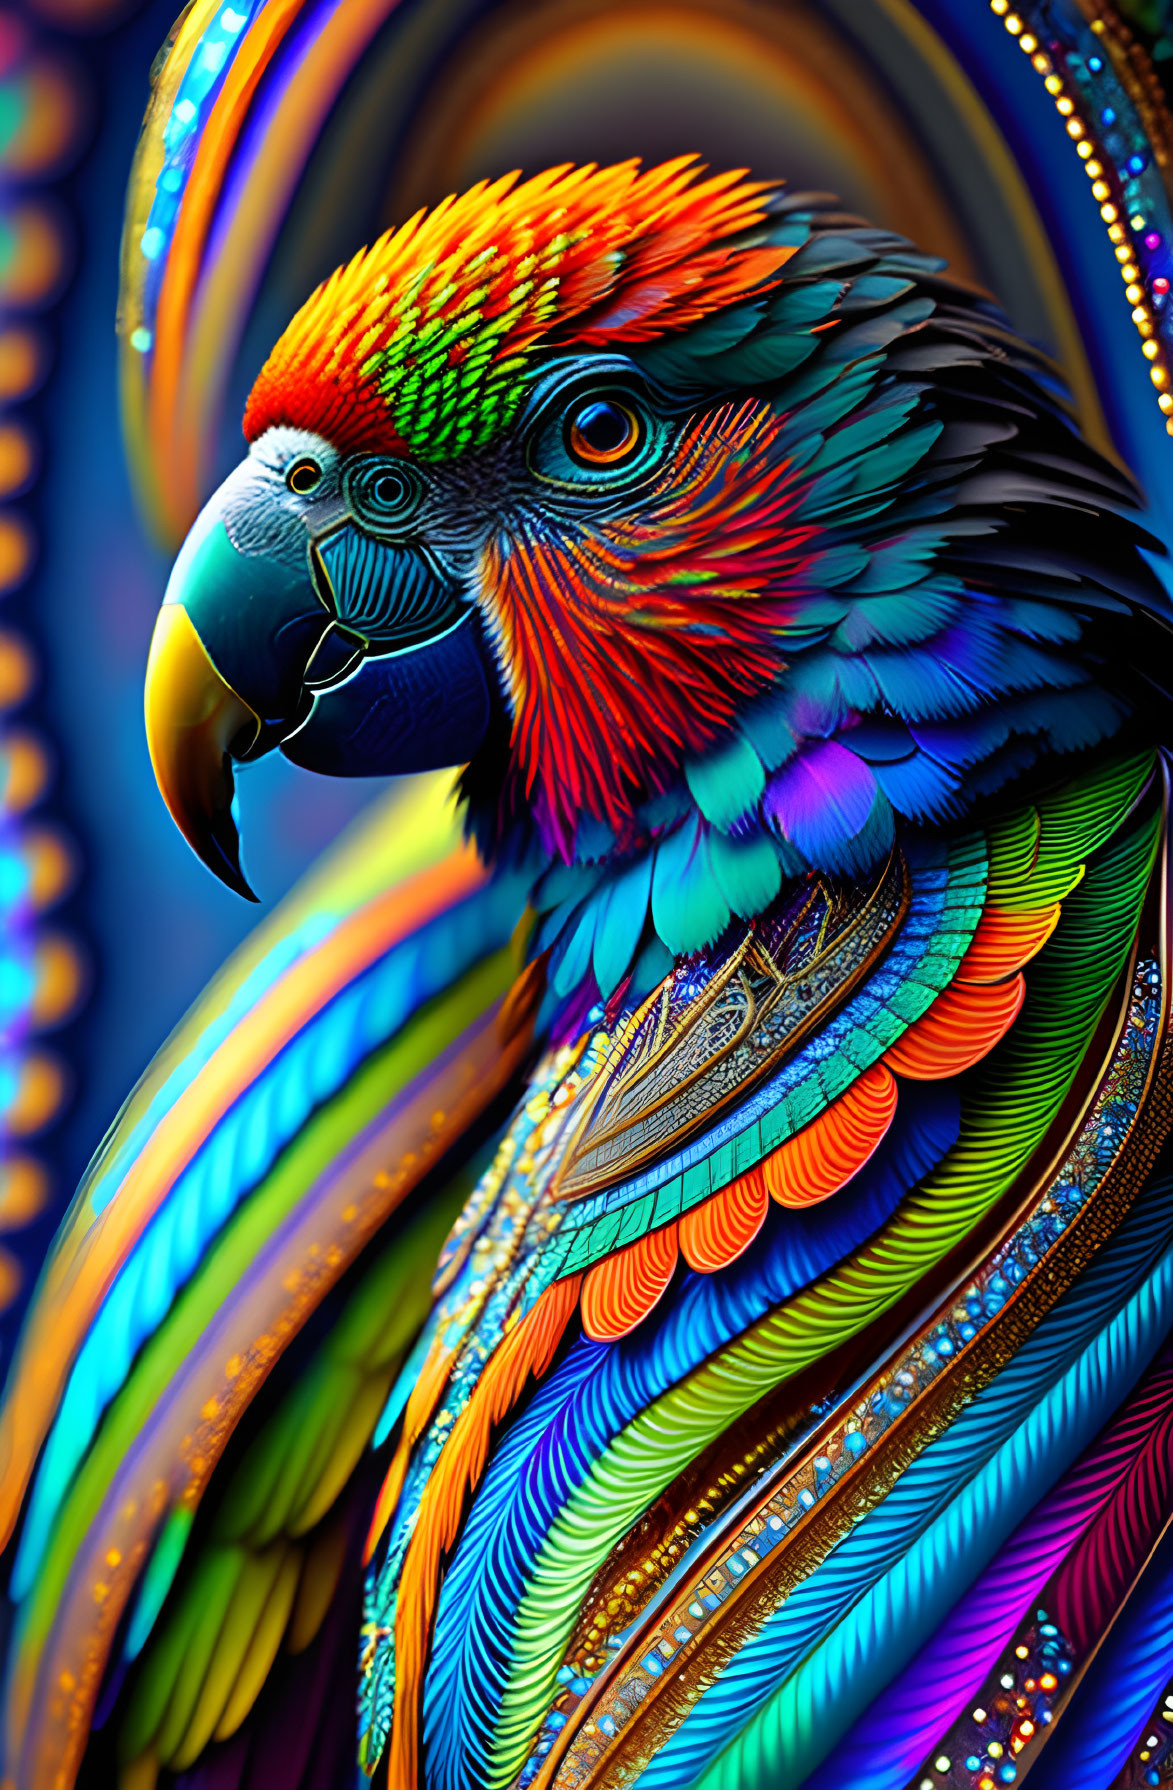 Mr. Parrot